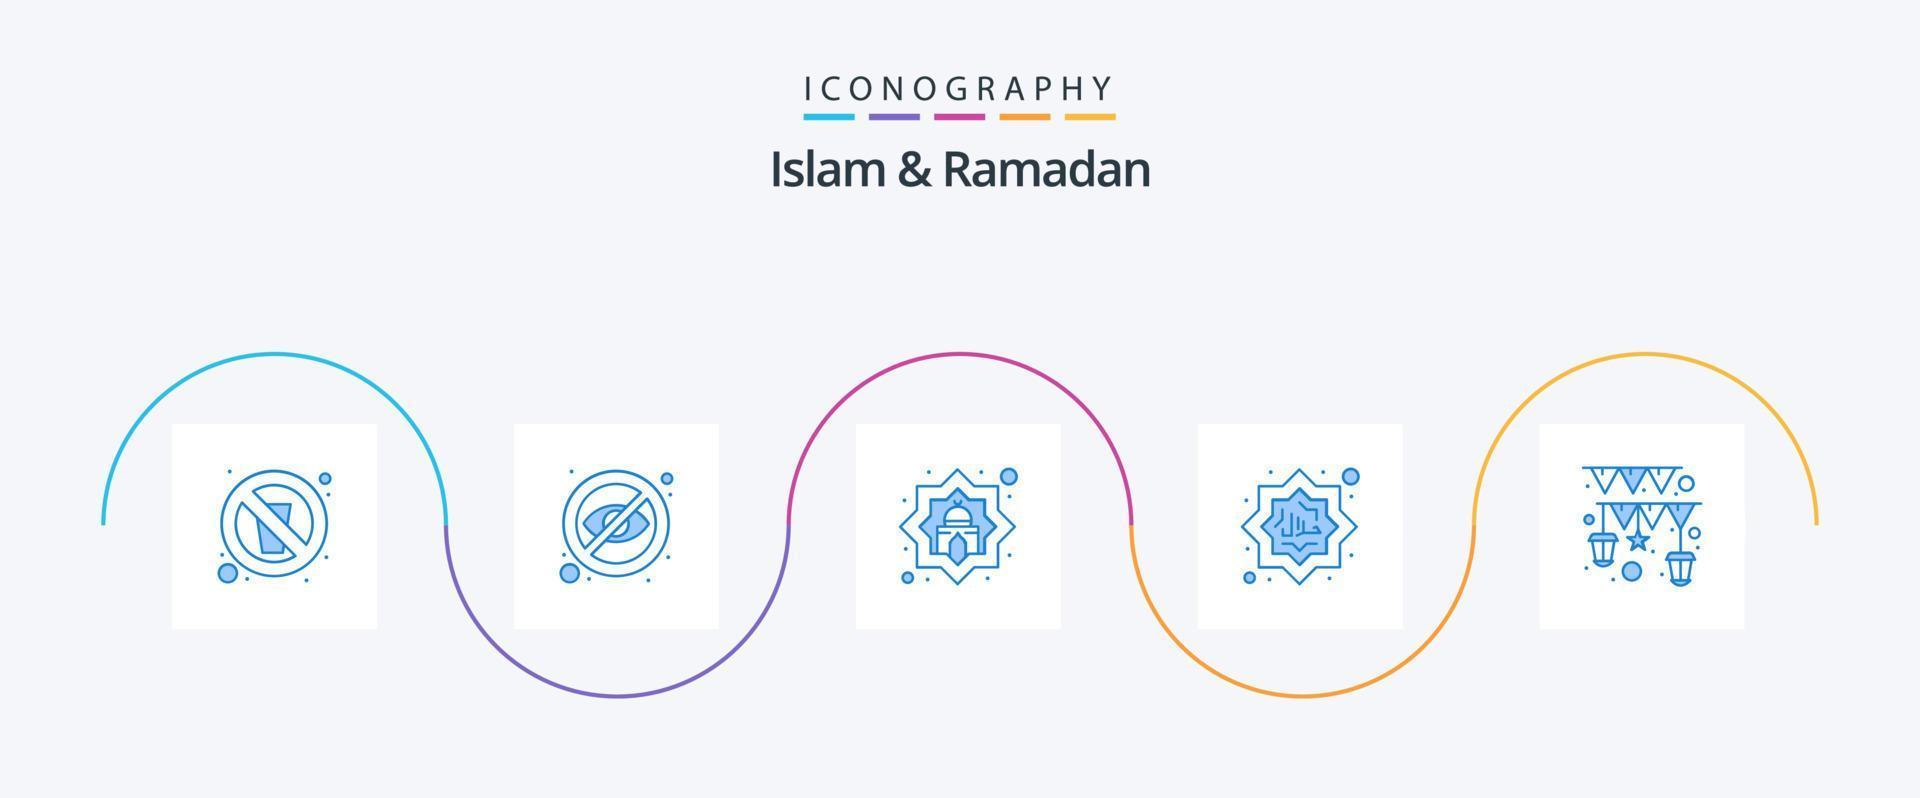 Islam und Ramadan Blau 5 Symbol Pack einschließlich Islam. Muslim. verstecken. halal. Muslim vektor